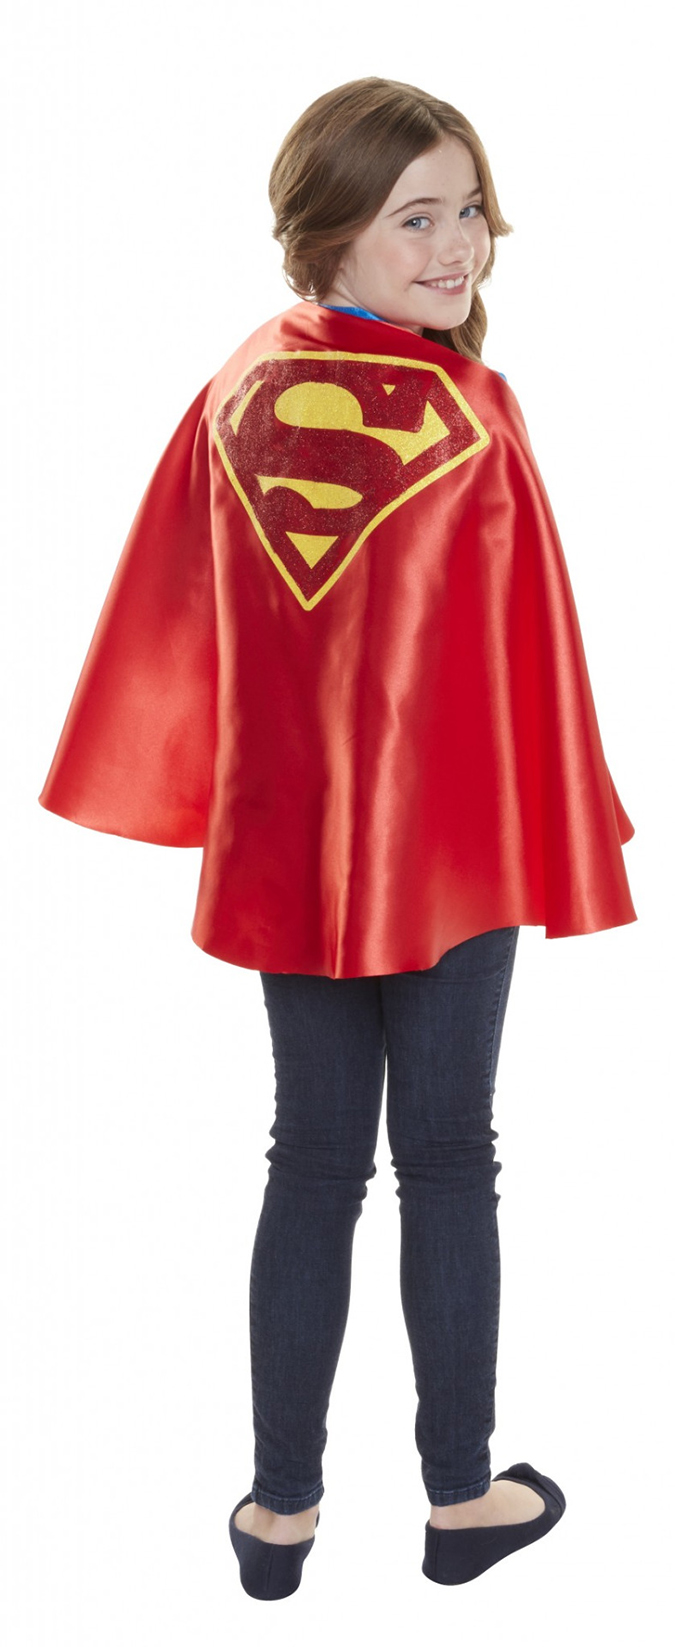 DC Super Hero Girls 2017: Огромные куклы, новые фигурки, наряды и другое